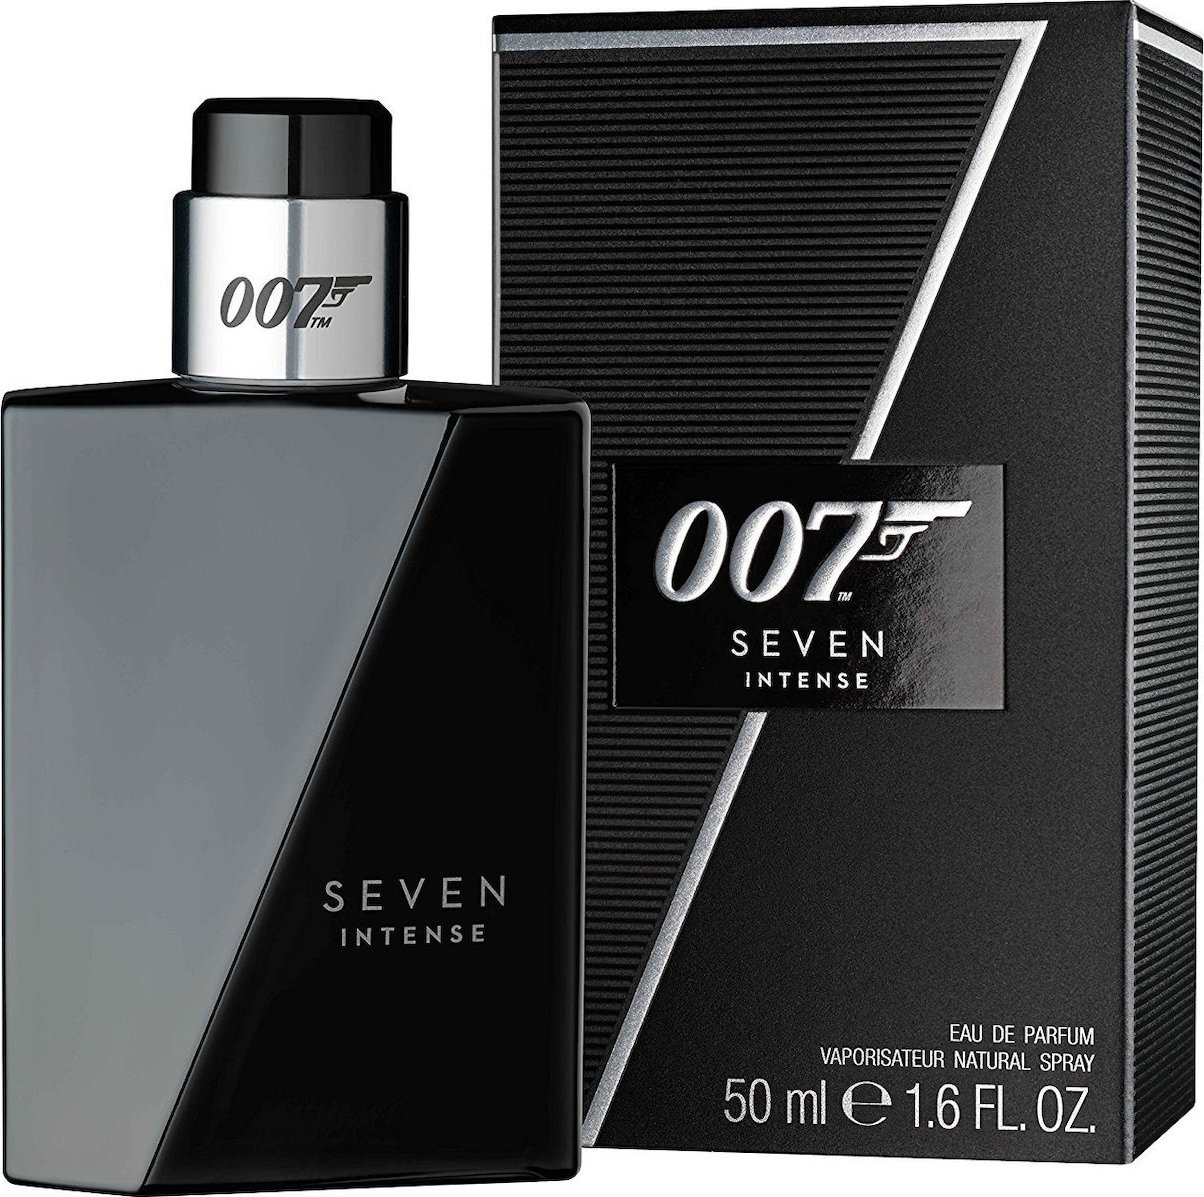 James Bond 007 Seven Intense Eau De Parfum 50ml Skroutzgr